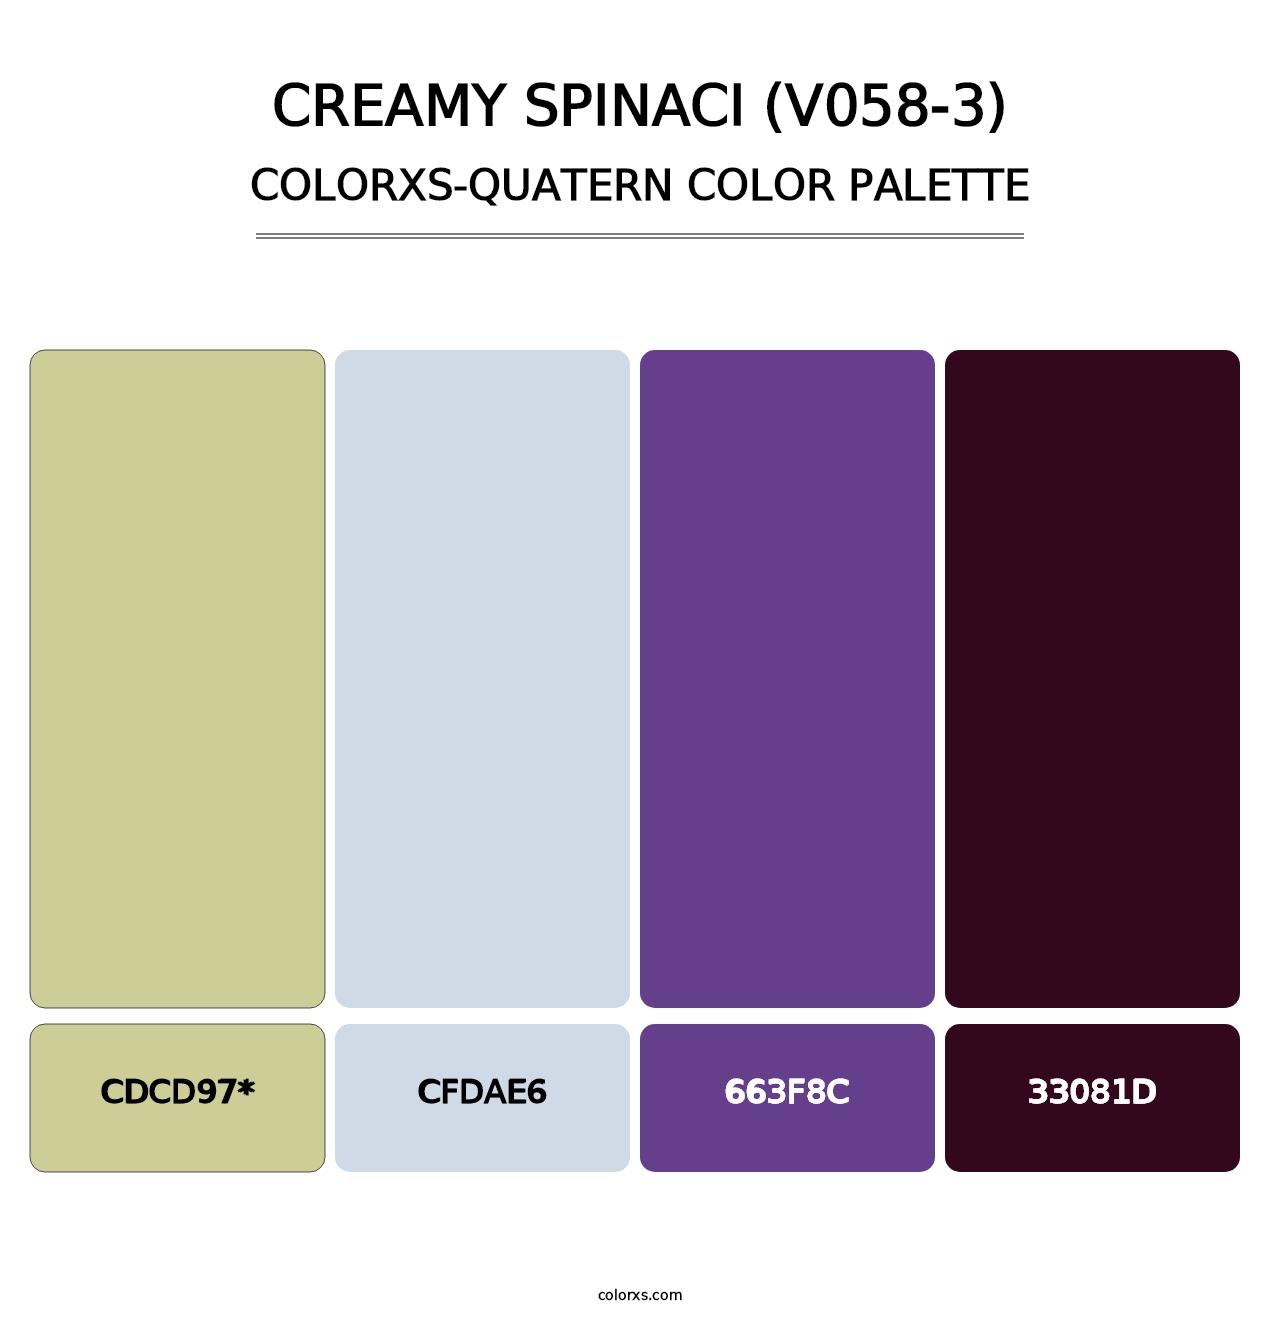 Creamy Spinaci (V058-3) - Colorxs Quatern Palette